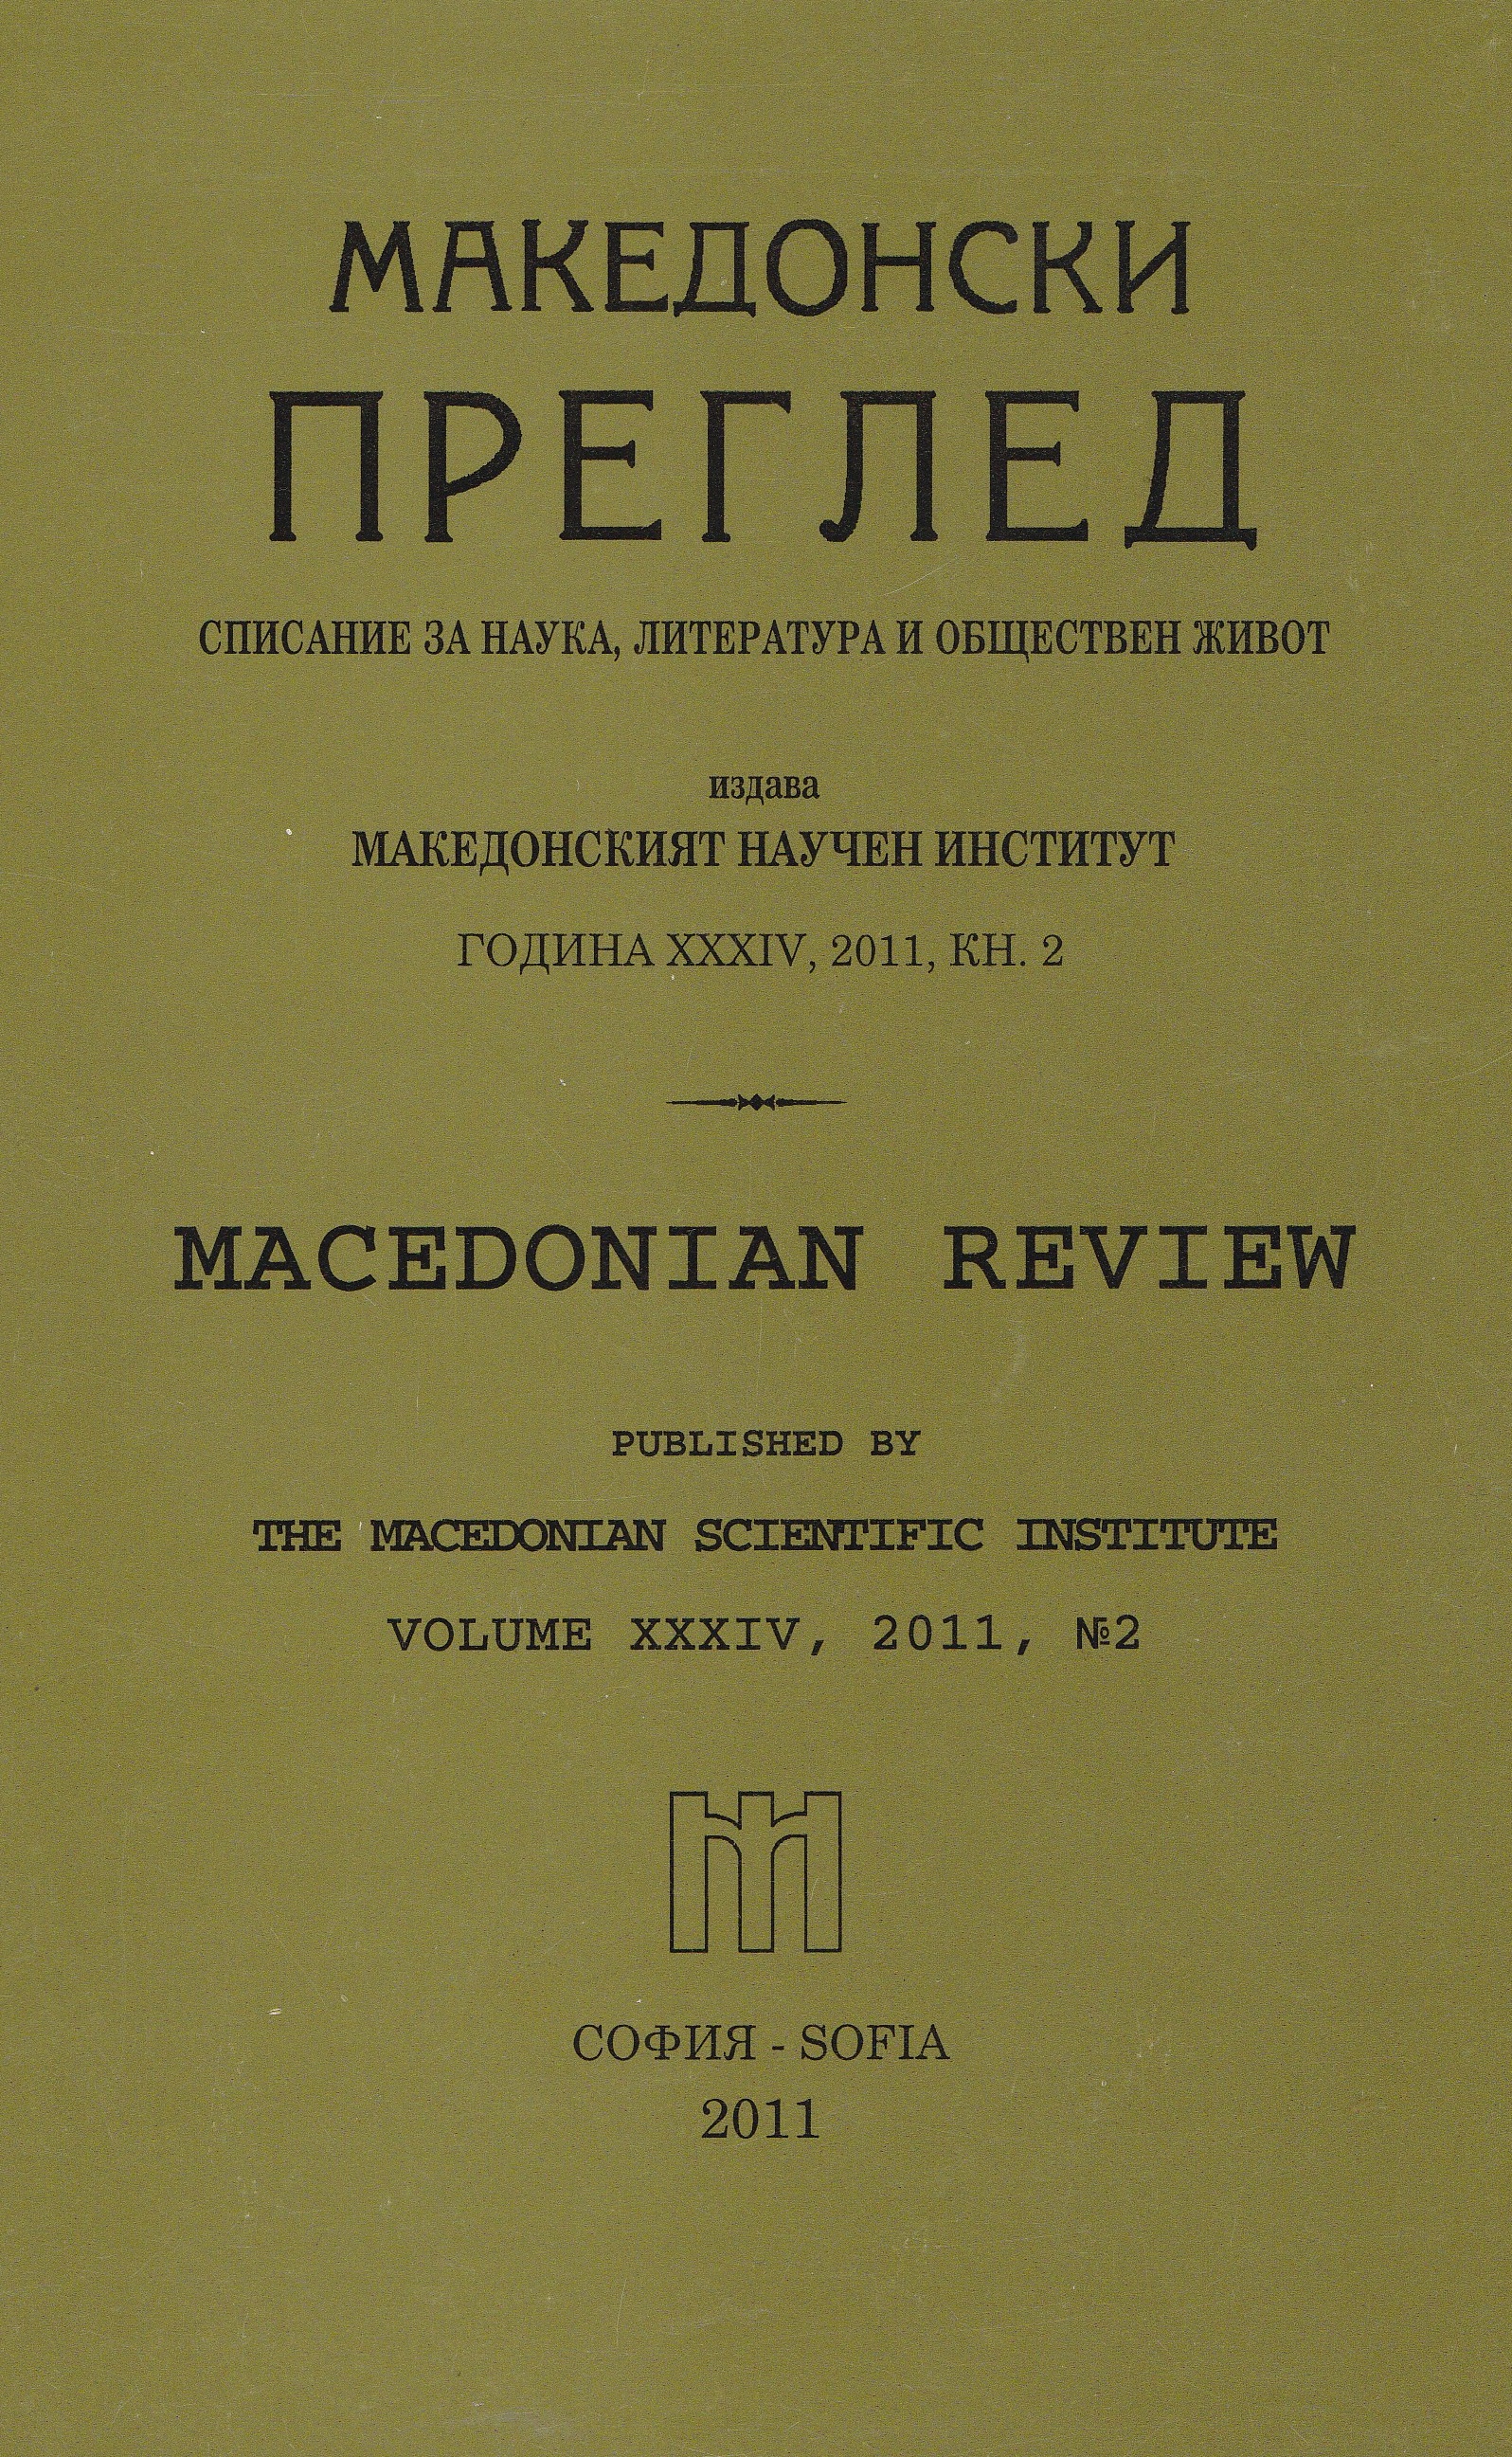 Съдържание на „Македонски преглед" (Списание за наука, литература и обществен живот). Год. XIV-XXXIII (1991-2010)